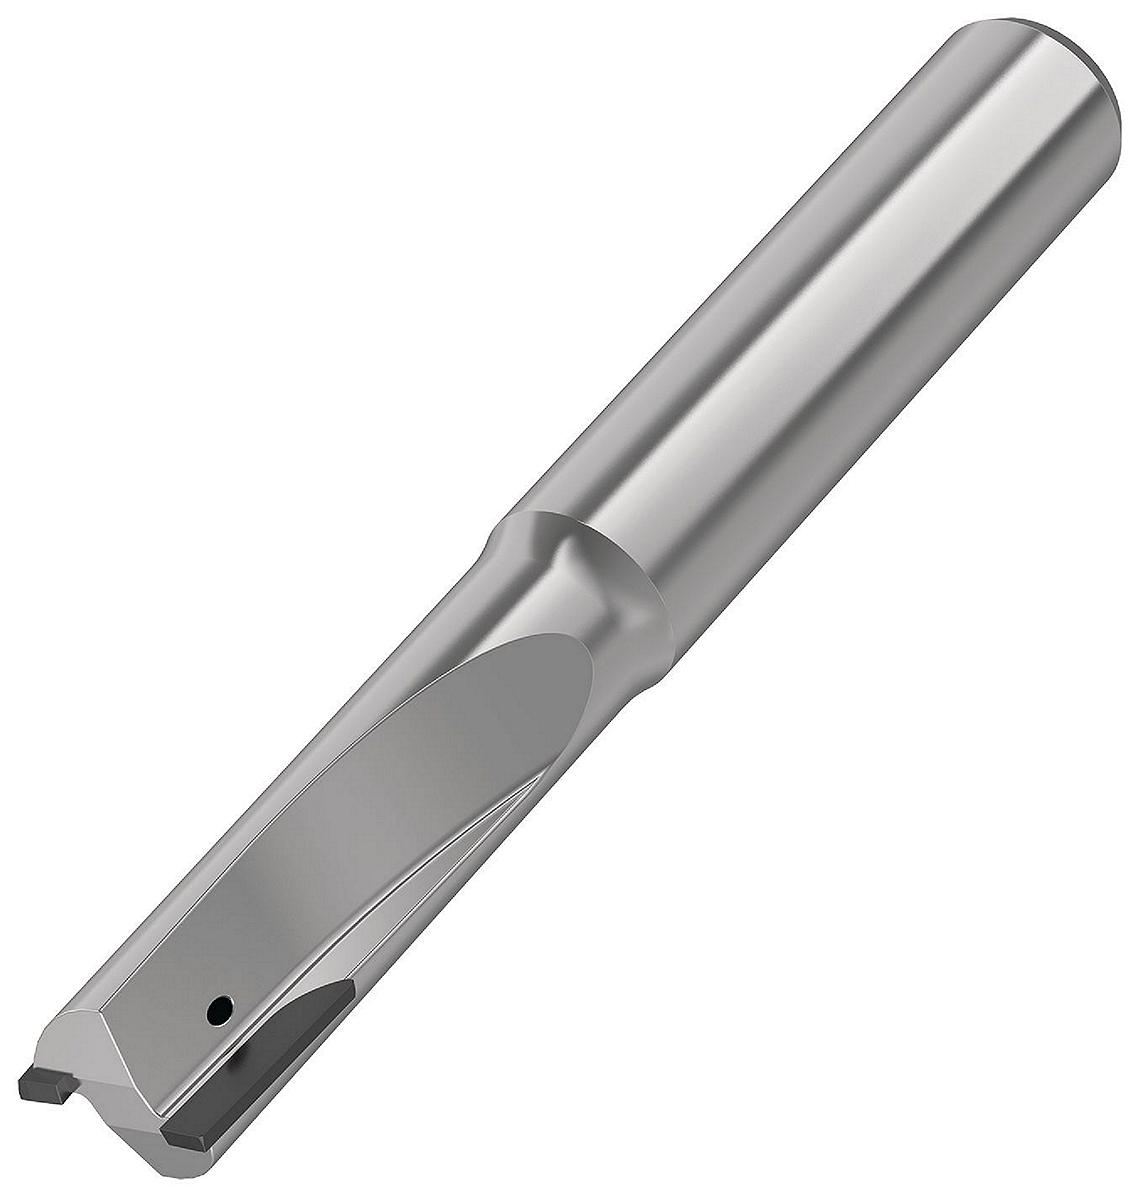 KenCut™ AQ PCD 立铣刀，用于铝材的粗加工和精加工